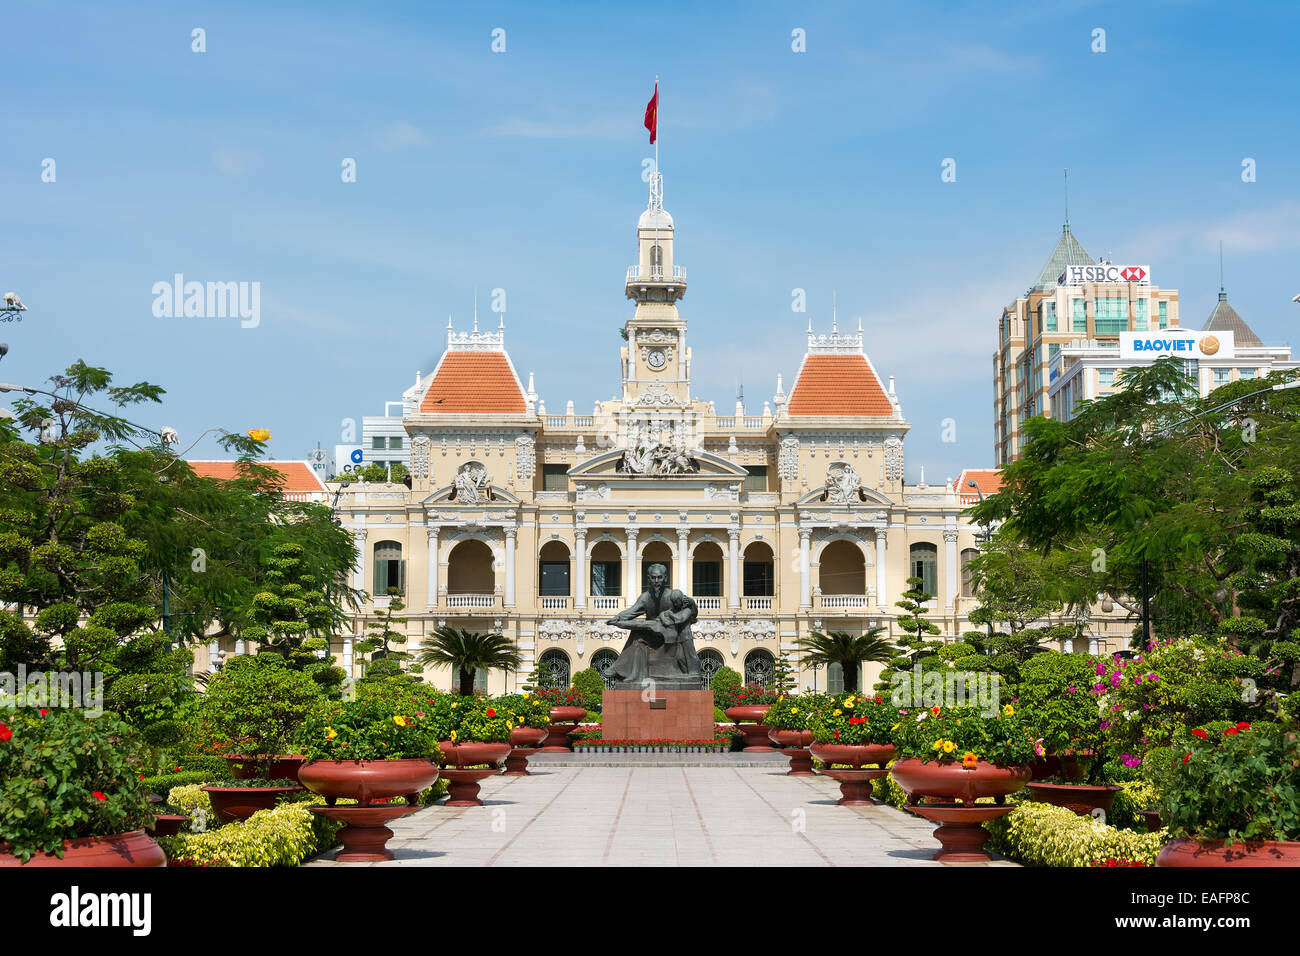 L'Hôtel de Ville d'Ho Chi Minh City Saigon Vietnam Asie du sud-est. Banque D'Images